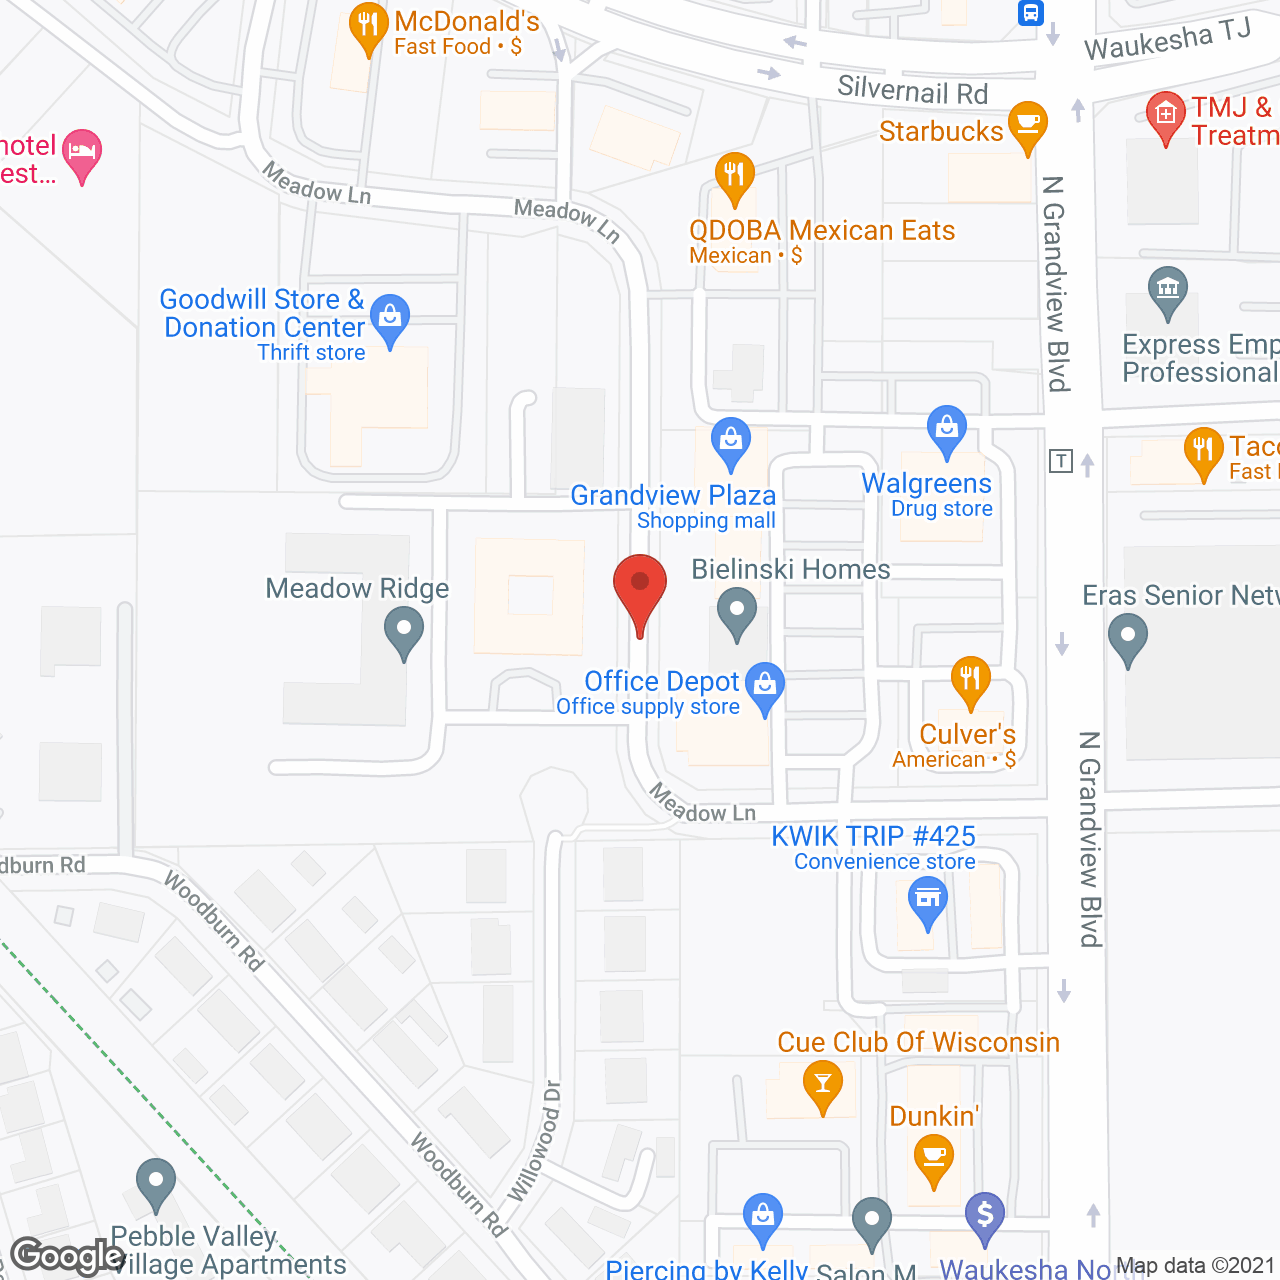 Heritage Court - Waukesha in google map